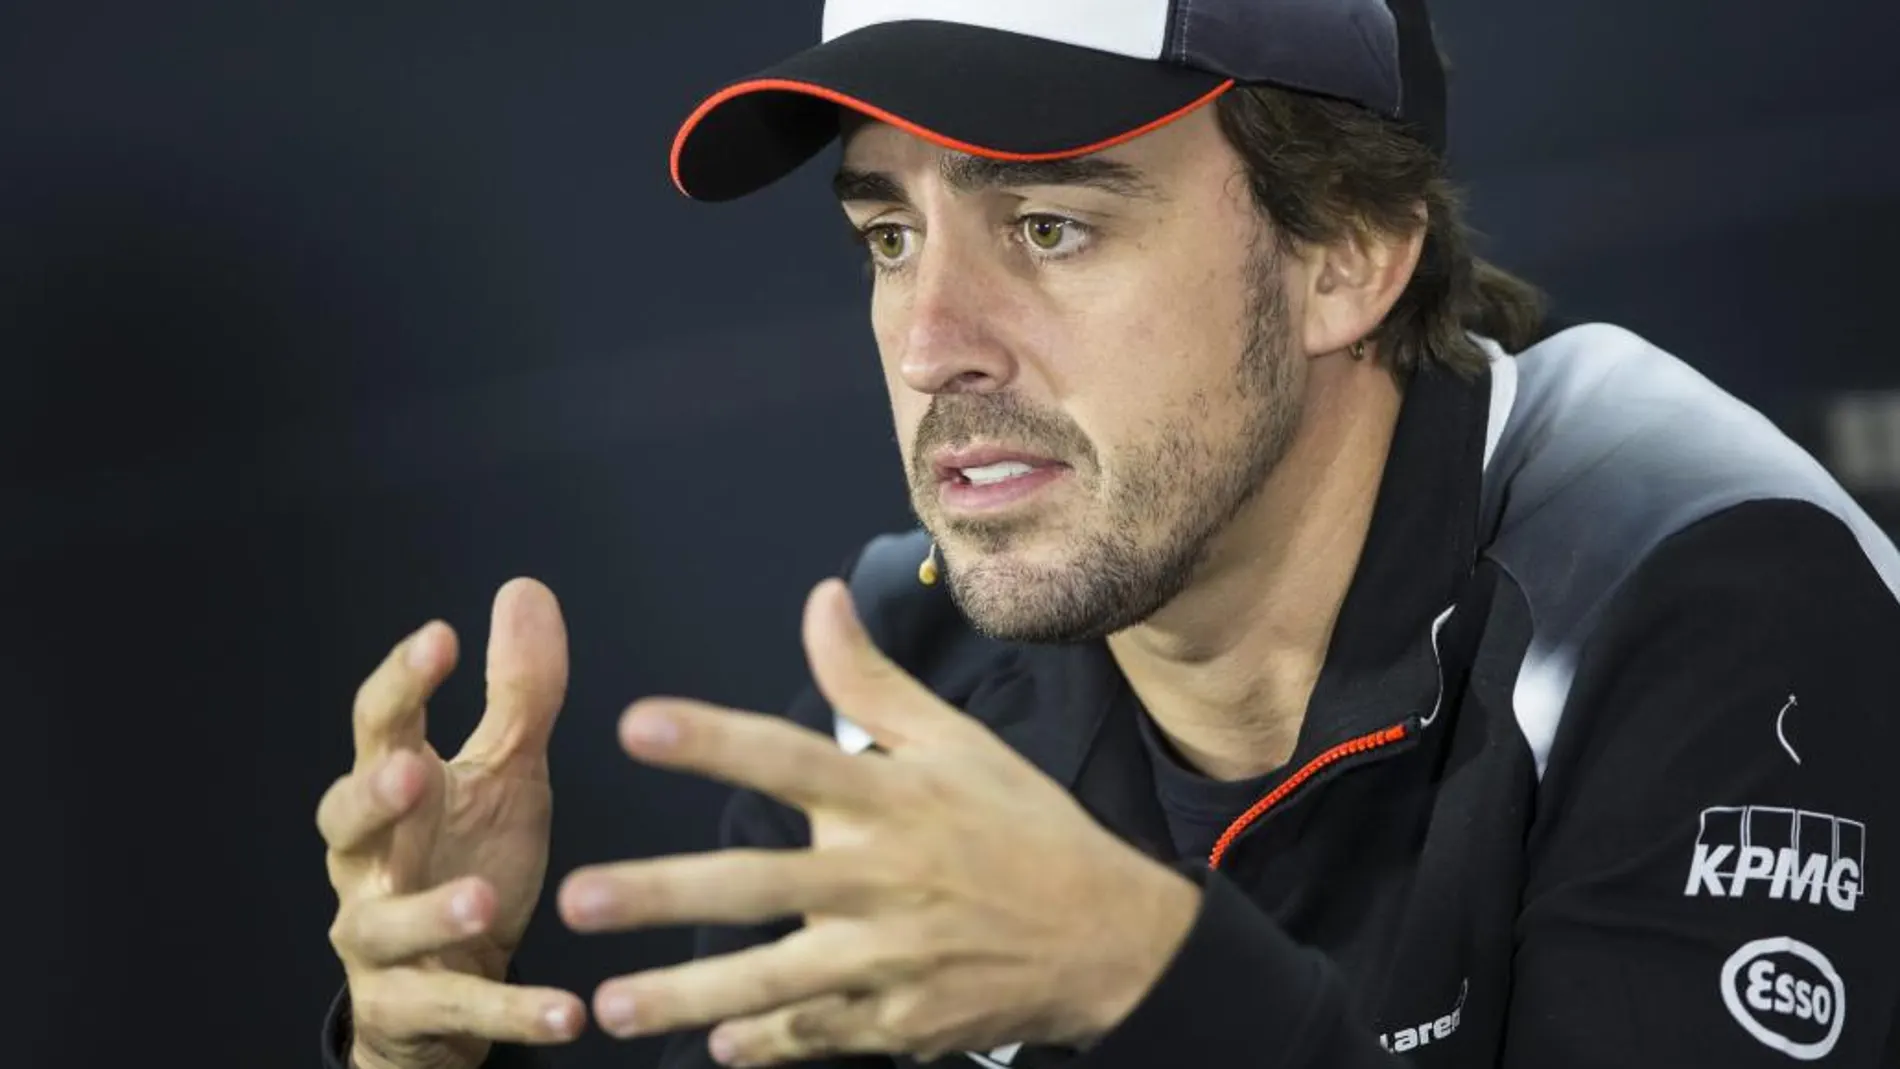 El piloto español de Fórmula Uno Fernando Alonso, durante la rueda de prensa de pilotos de cara al Gran Premio de Baréin